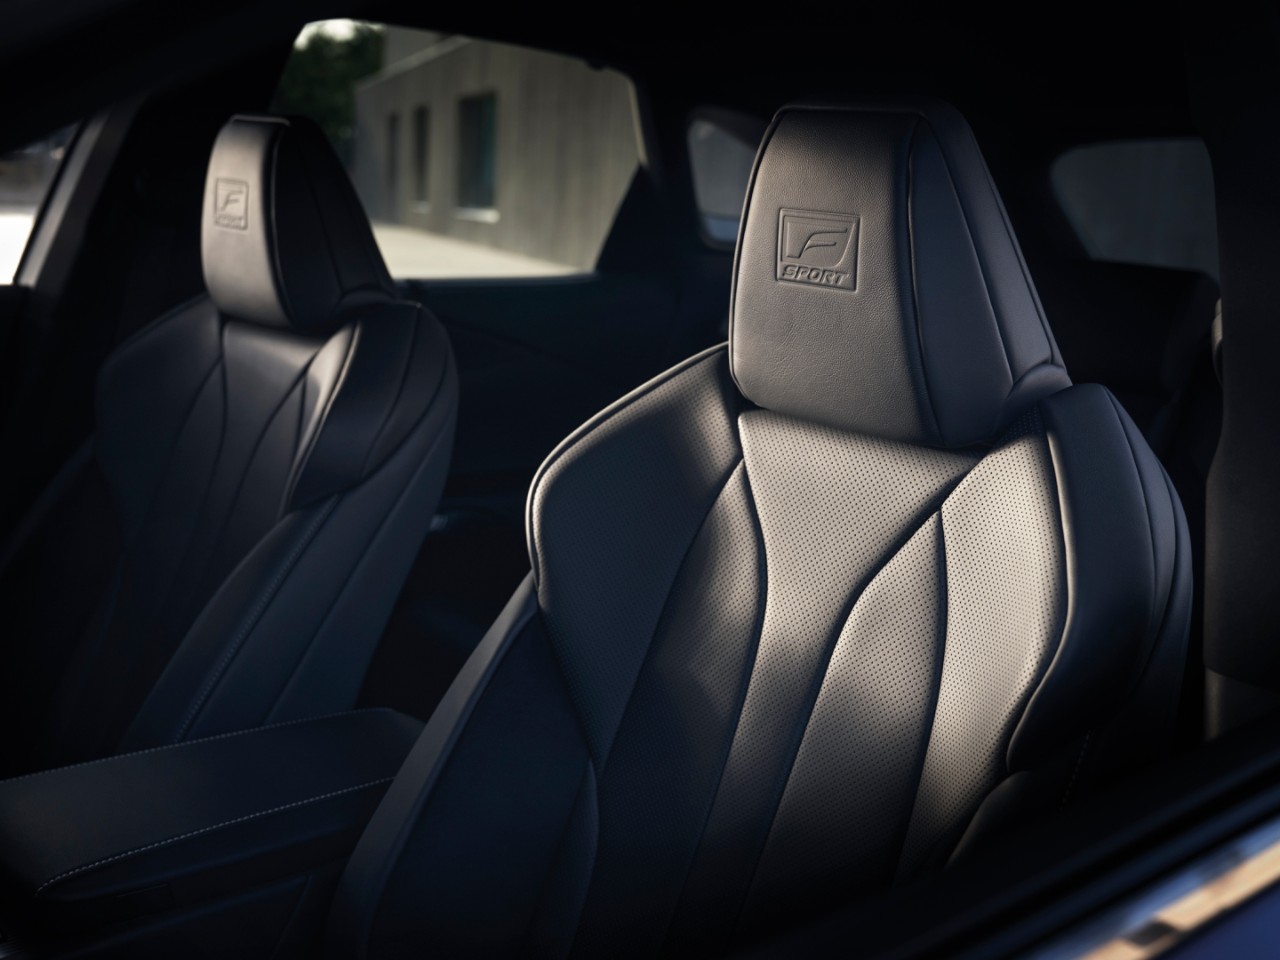 Lexus F Sport interior 